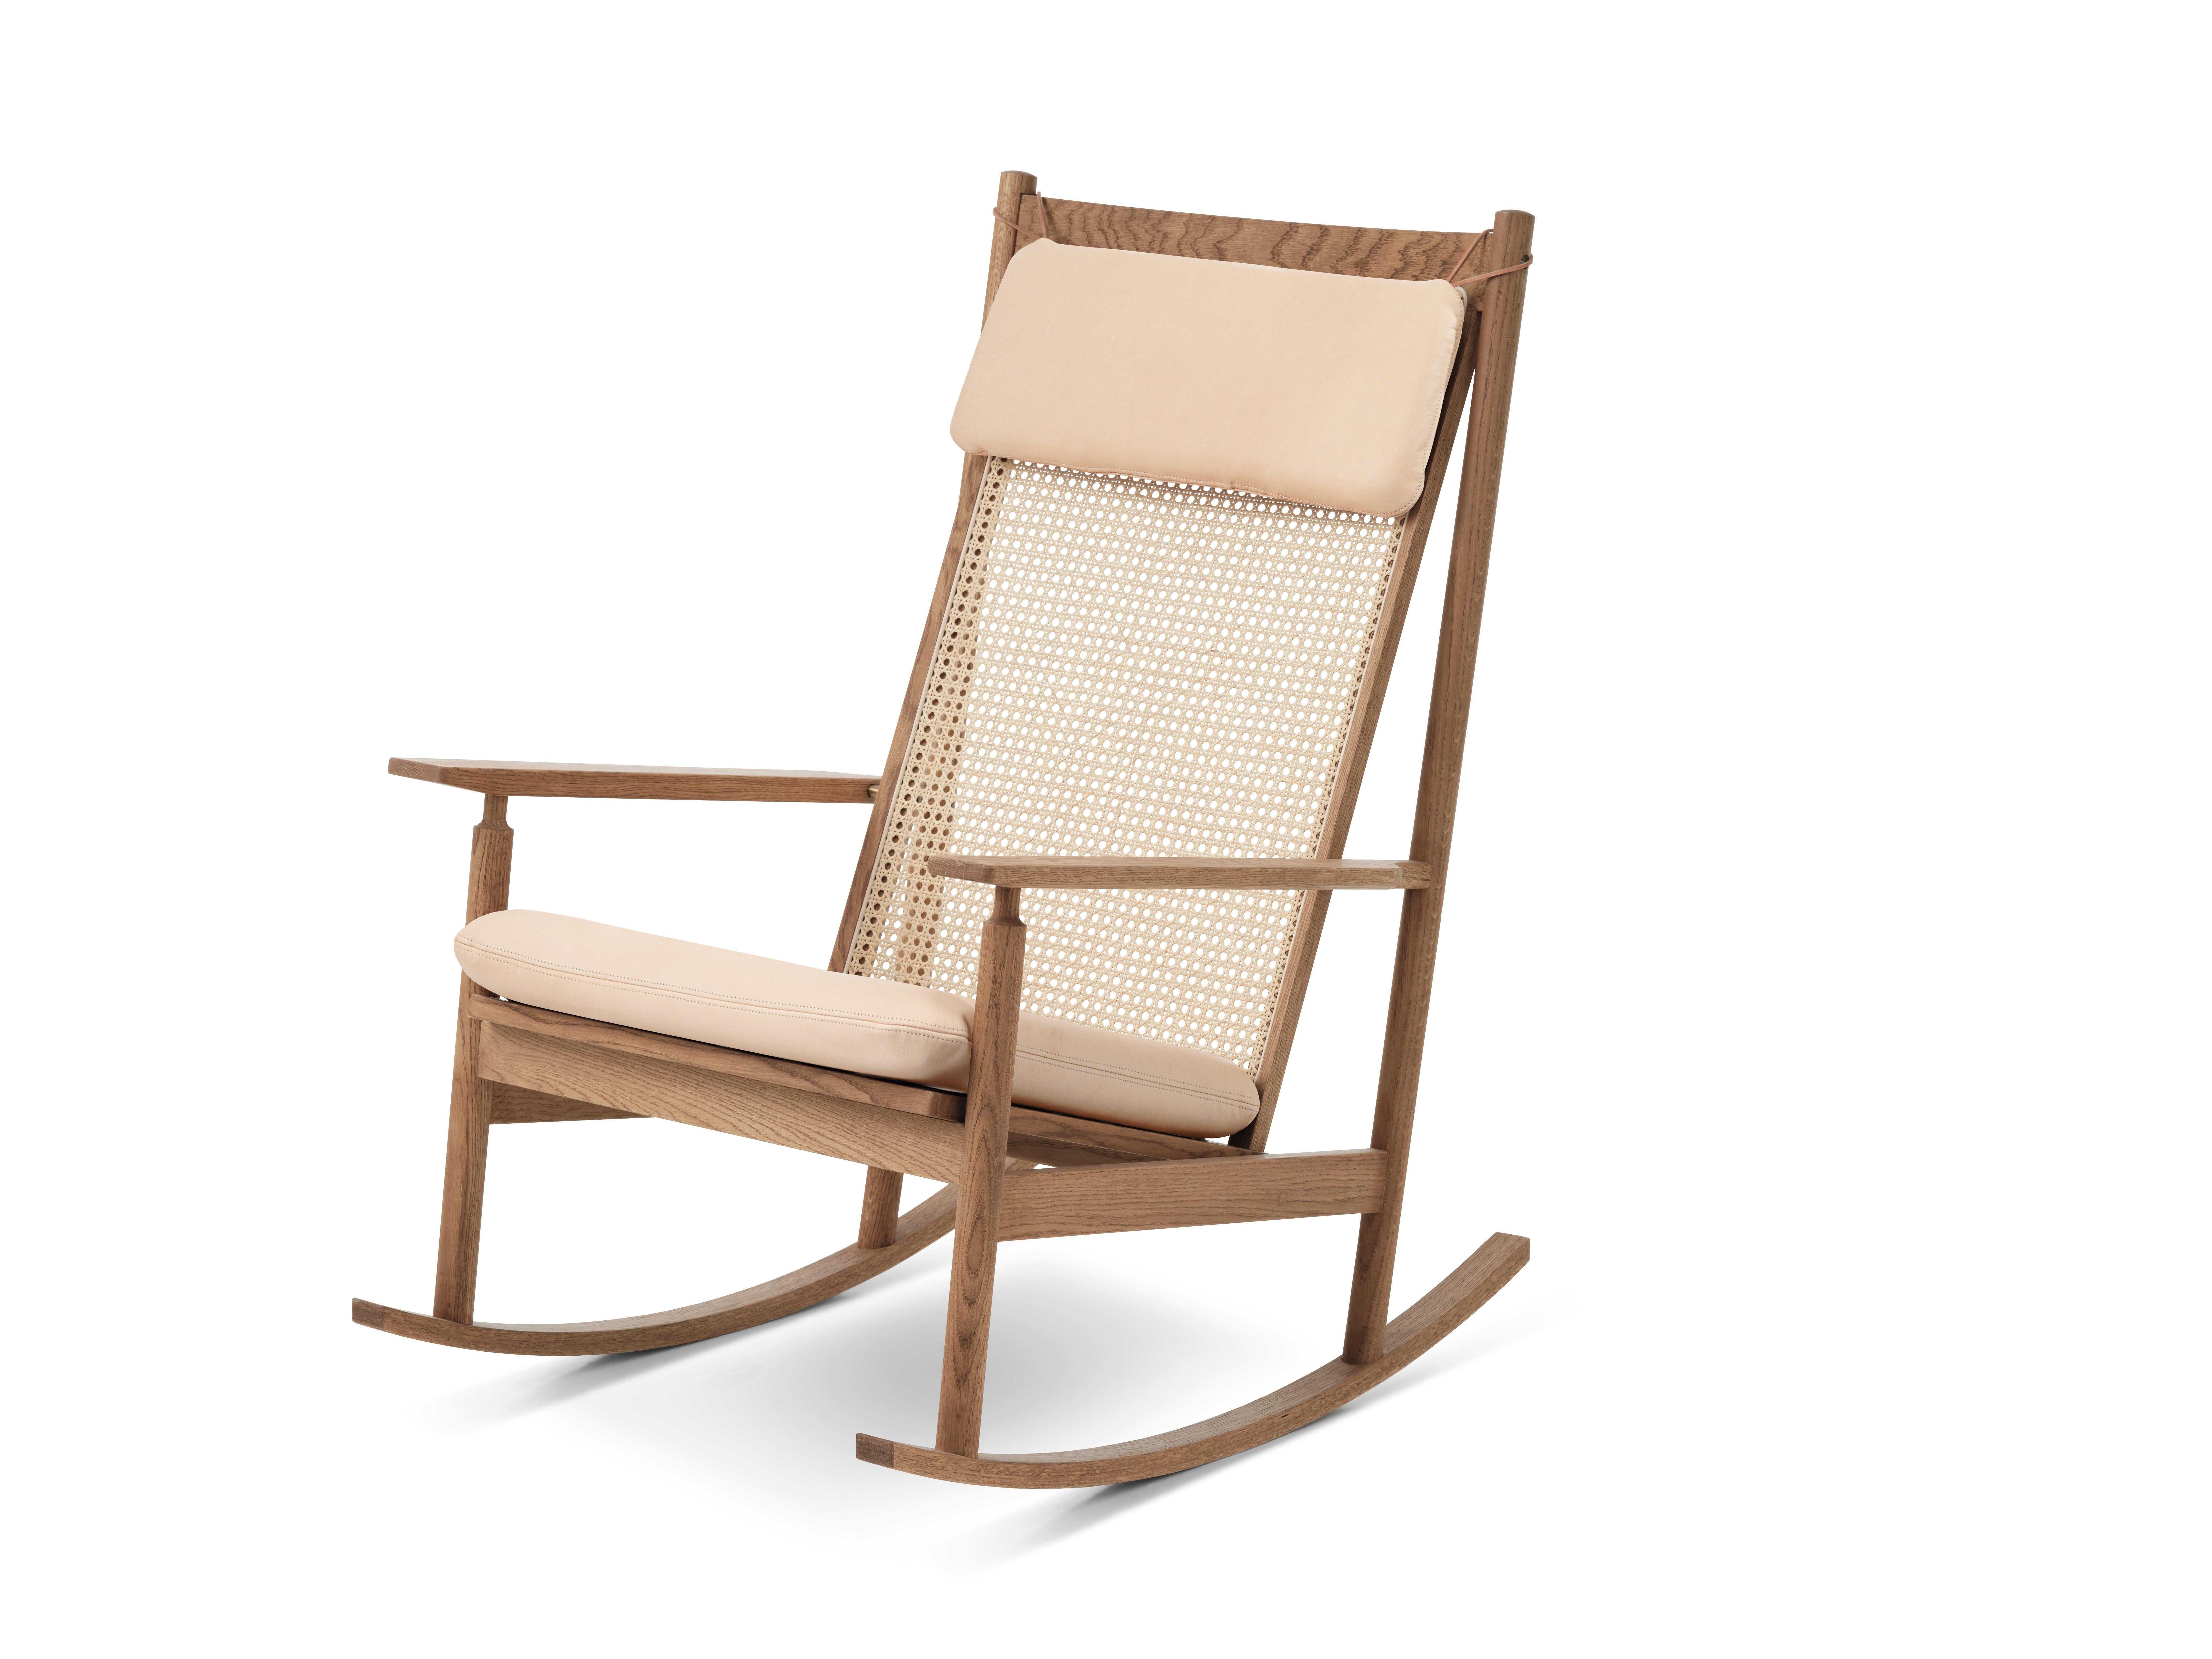 Der Schaukelstuhl Classic swing wurde 1956 von dem Architekten Hans Olsen entworfen, der auf der Suche nach originellen Möbelentwürfen ausgiebige Experimente durchführte. Der Stuhl, der auch als Modell 532a bekannt ist, wurde ursprünglich von dem